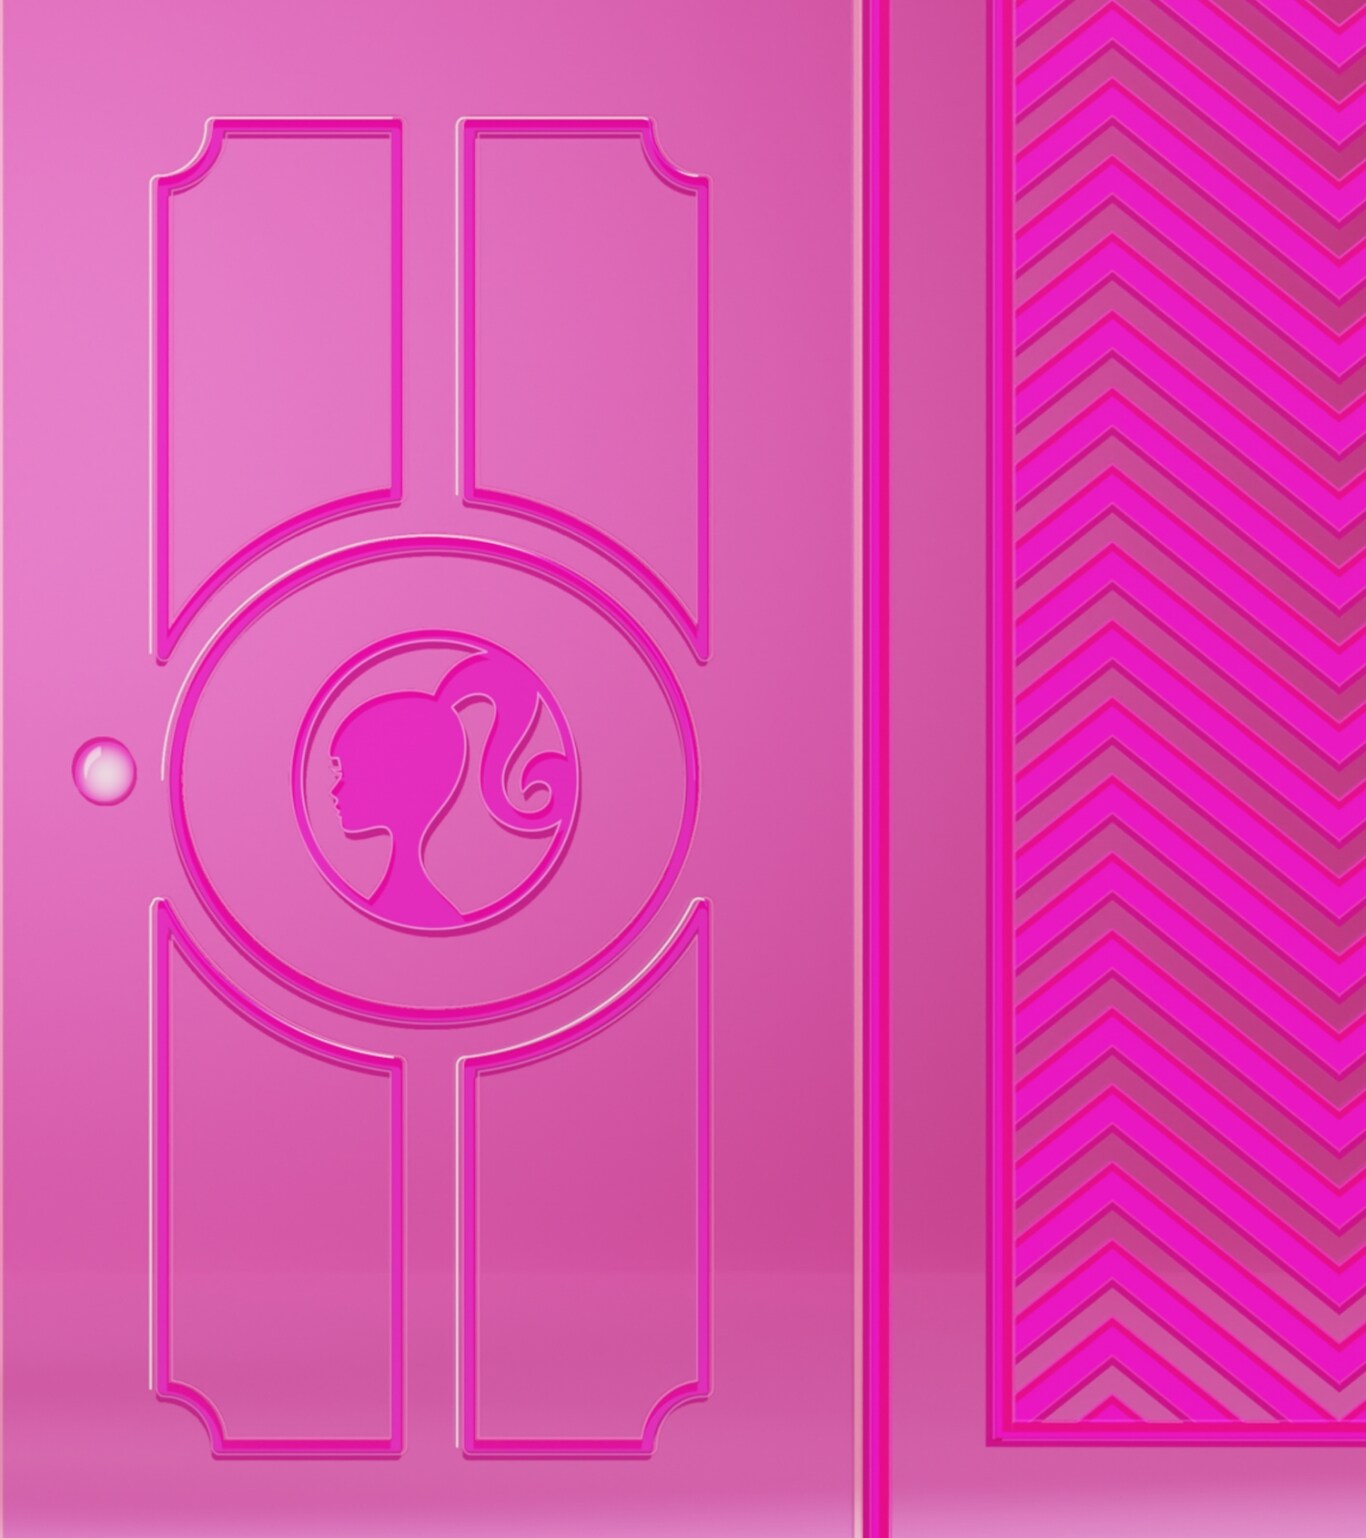 Pinke Türen mit Barbie™-Silhouetten, die sich öffnen und unsere Limited Edition Barbie™ x Fossil Uhr Raquel mit schwarzem Band und typischen Symbolen wie einer Glassteinblume, einem Rollschuh und einem pinken Auto zeigen.